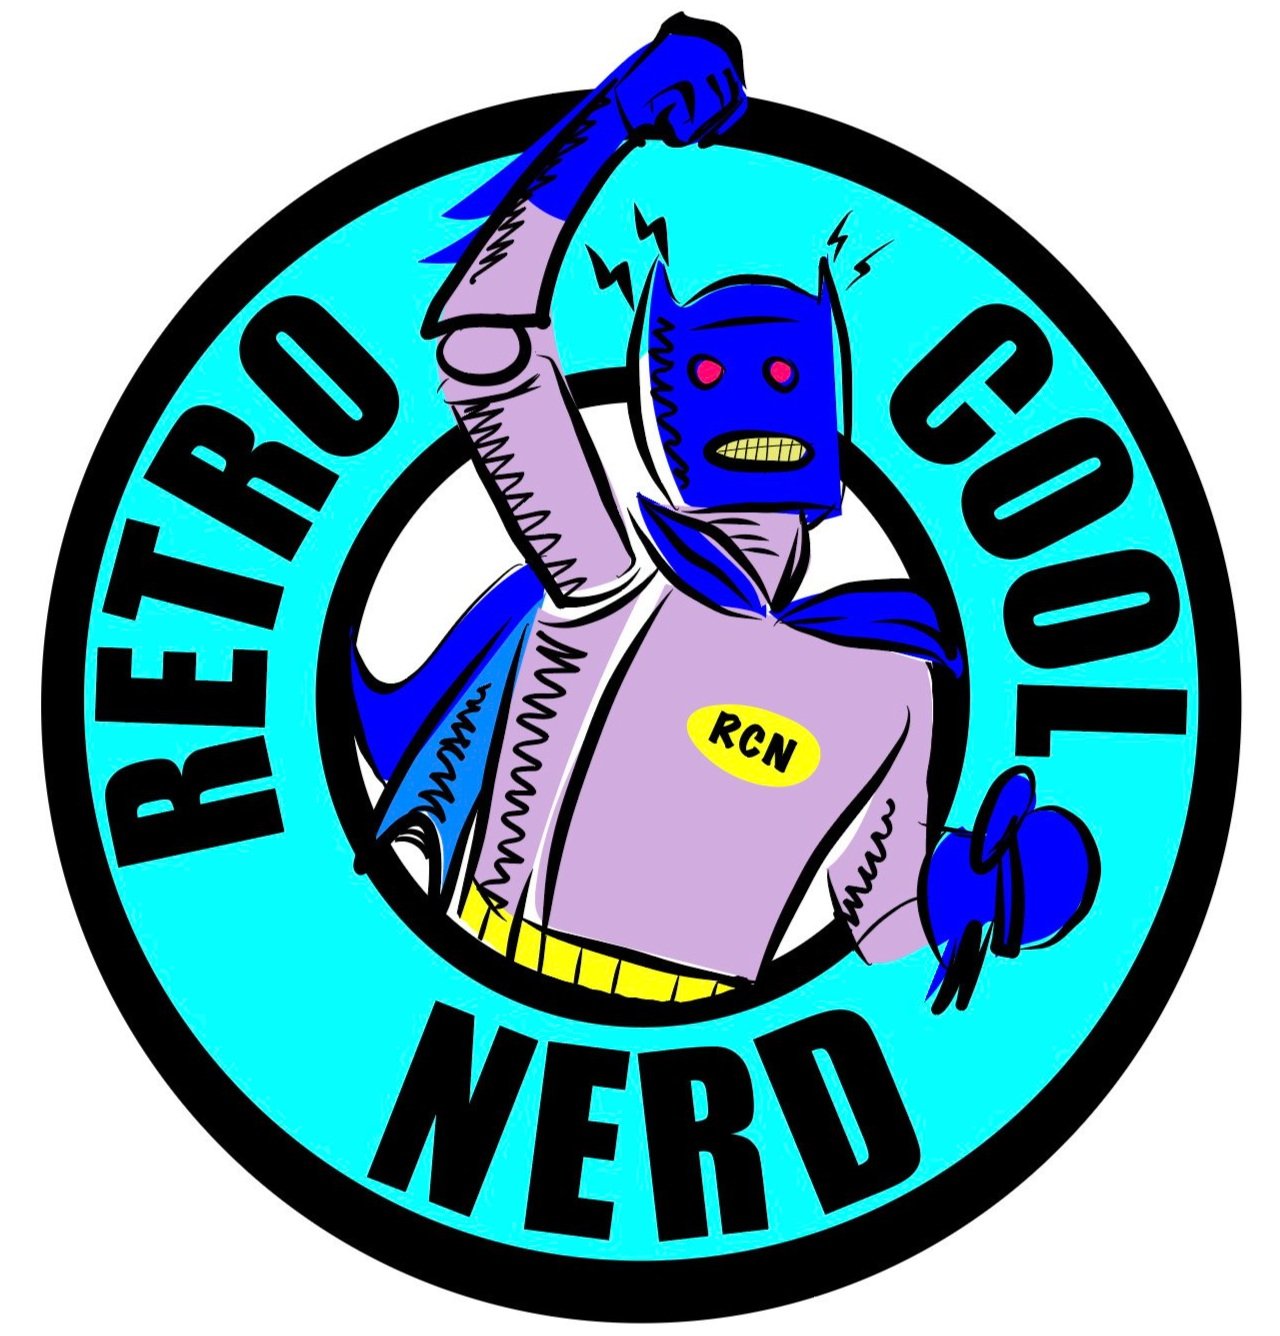 Retro, Cool, Nerd.